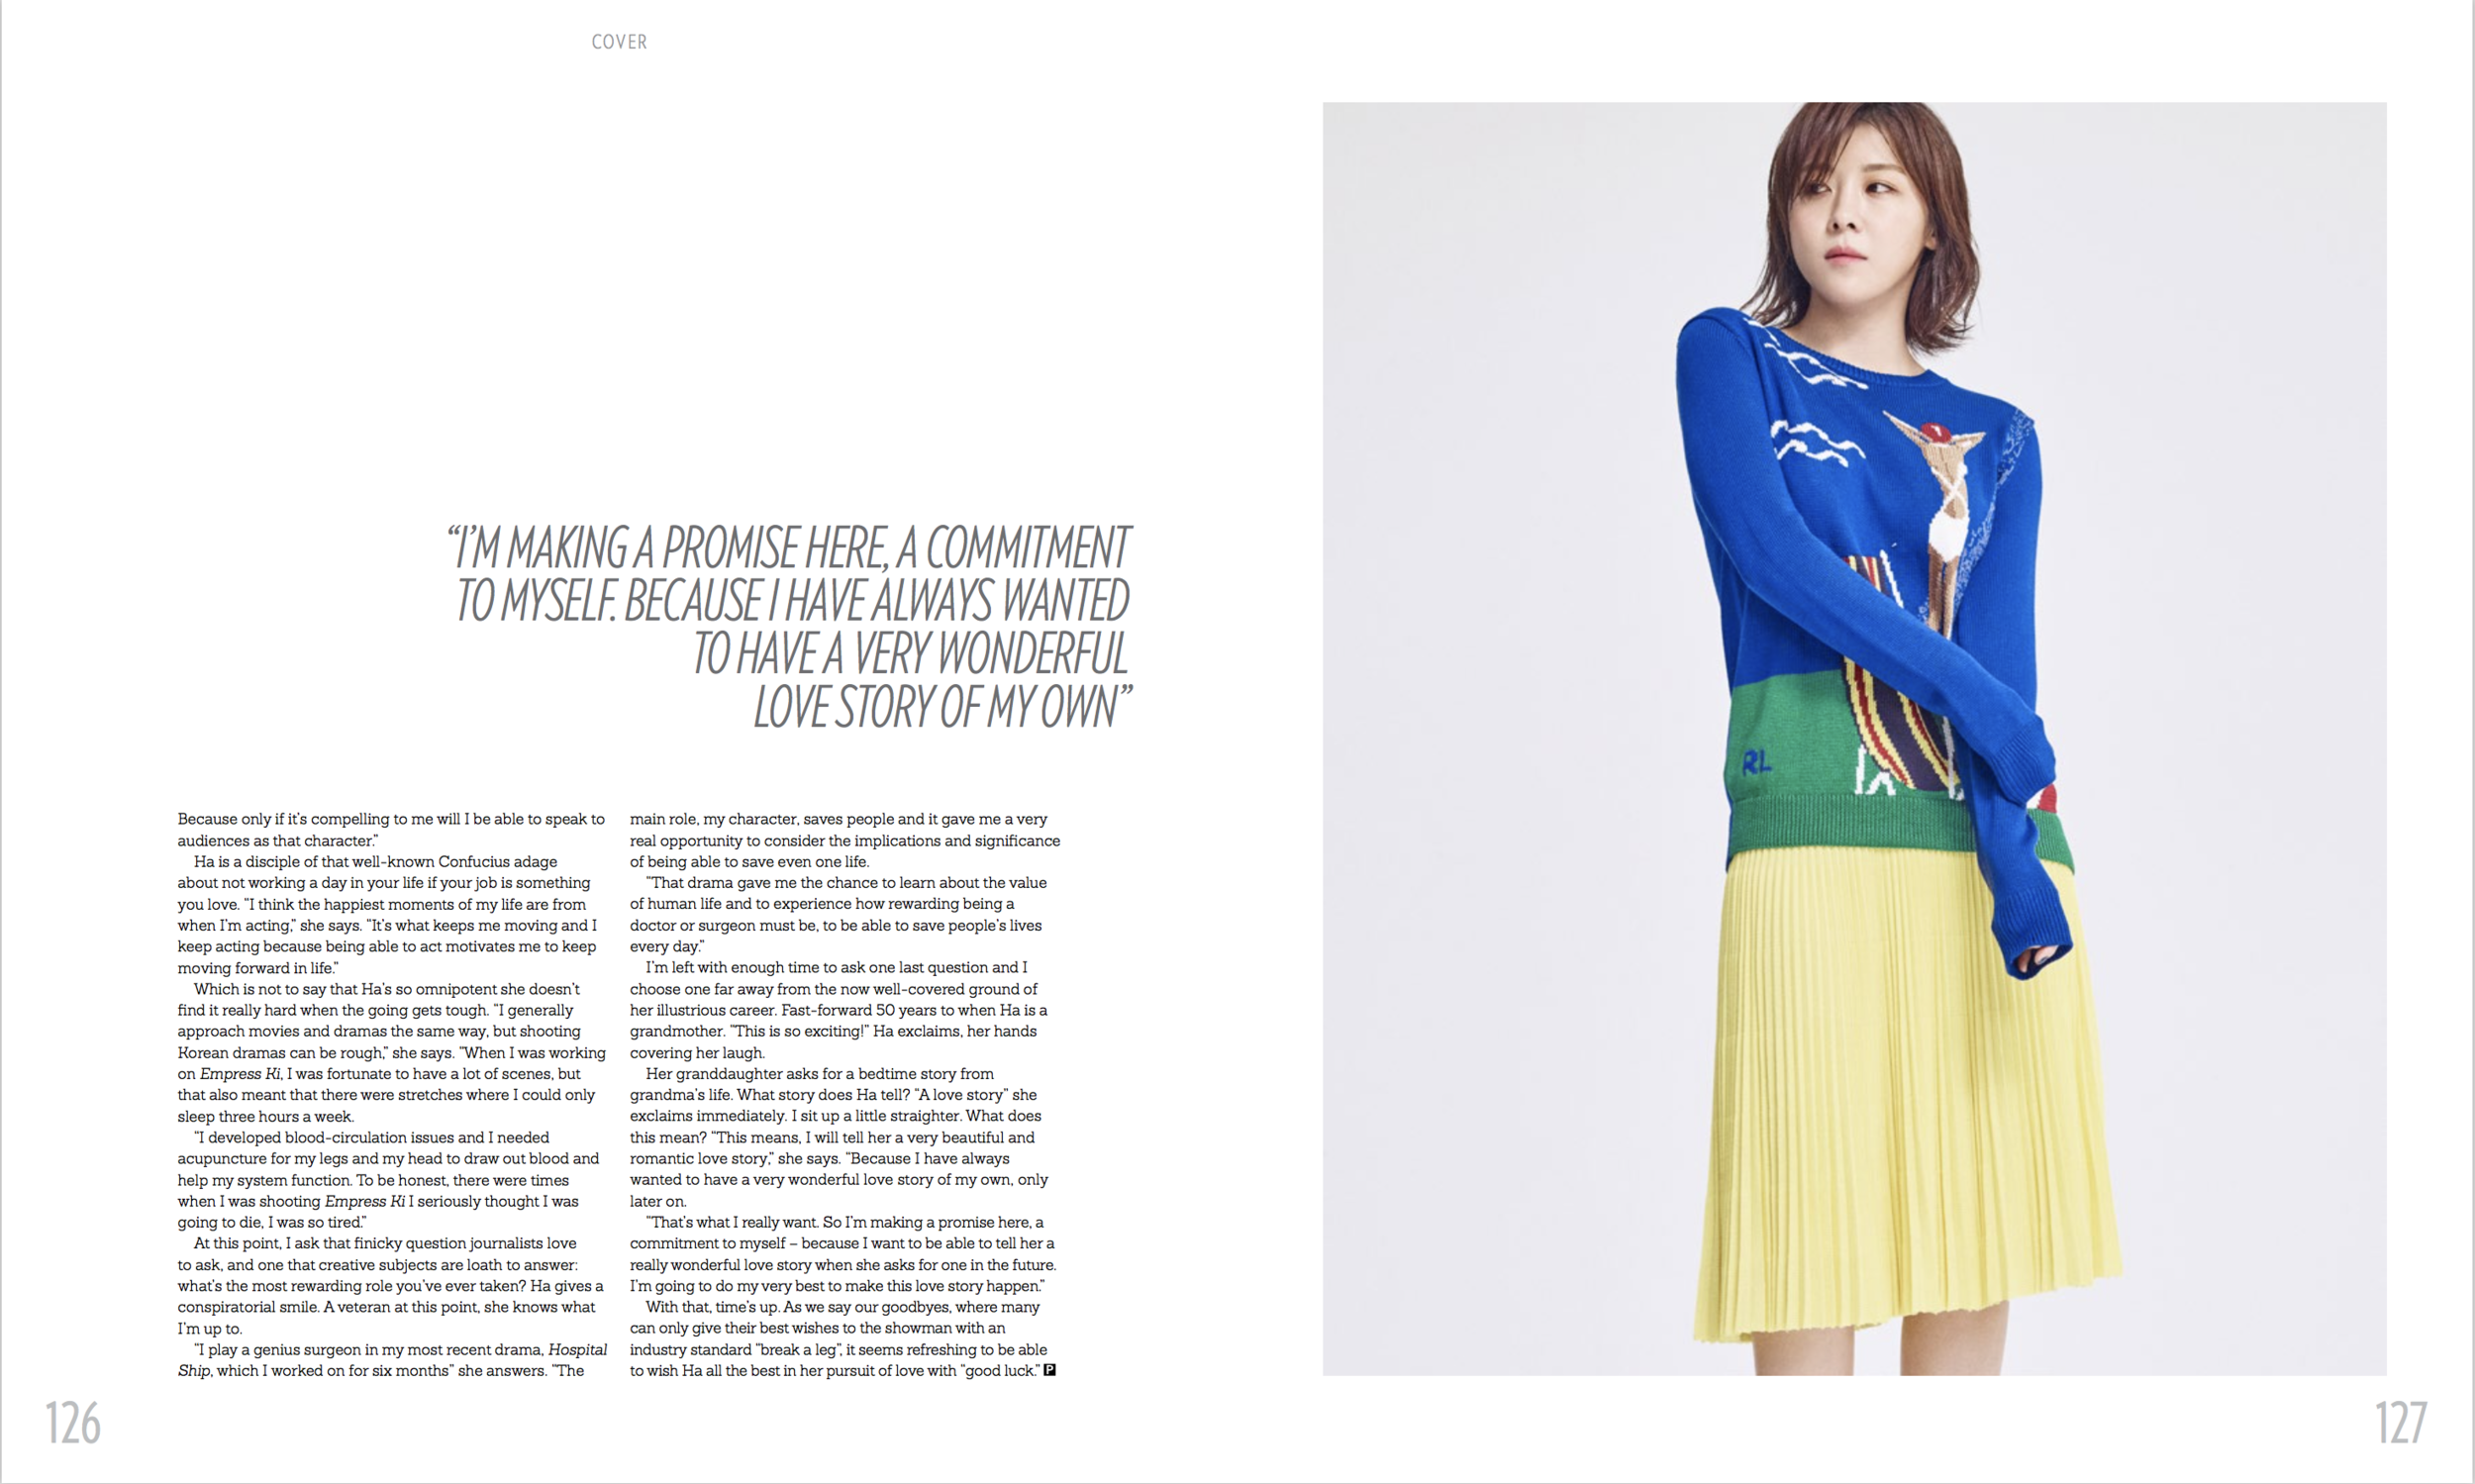 Ha Ji Won Prestige April Cover Story Zaneta Cheng 4:4.png